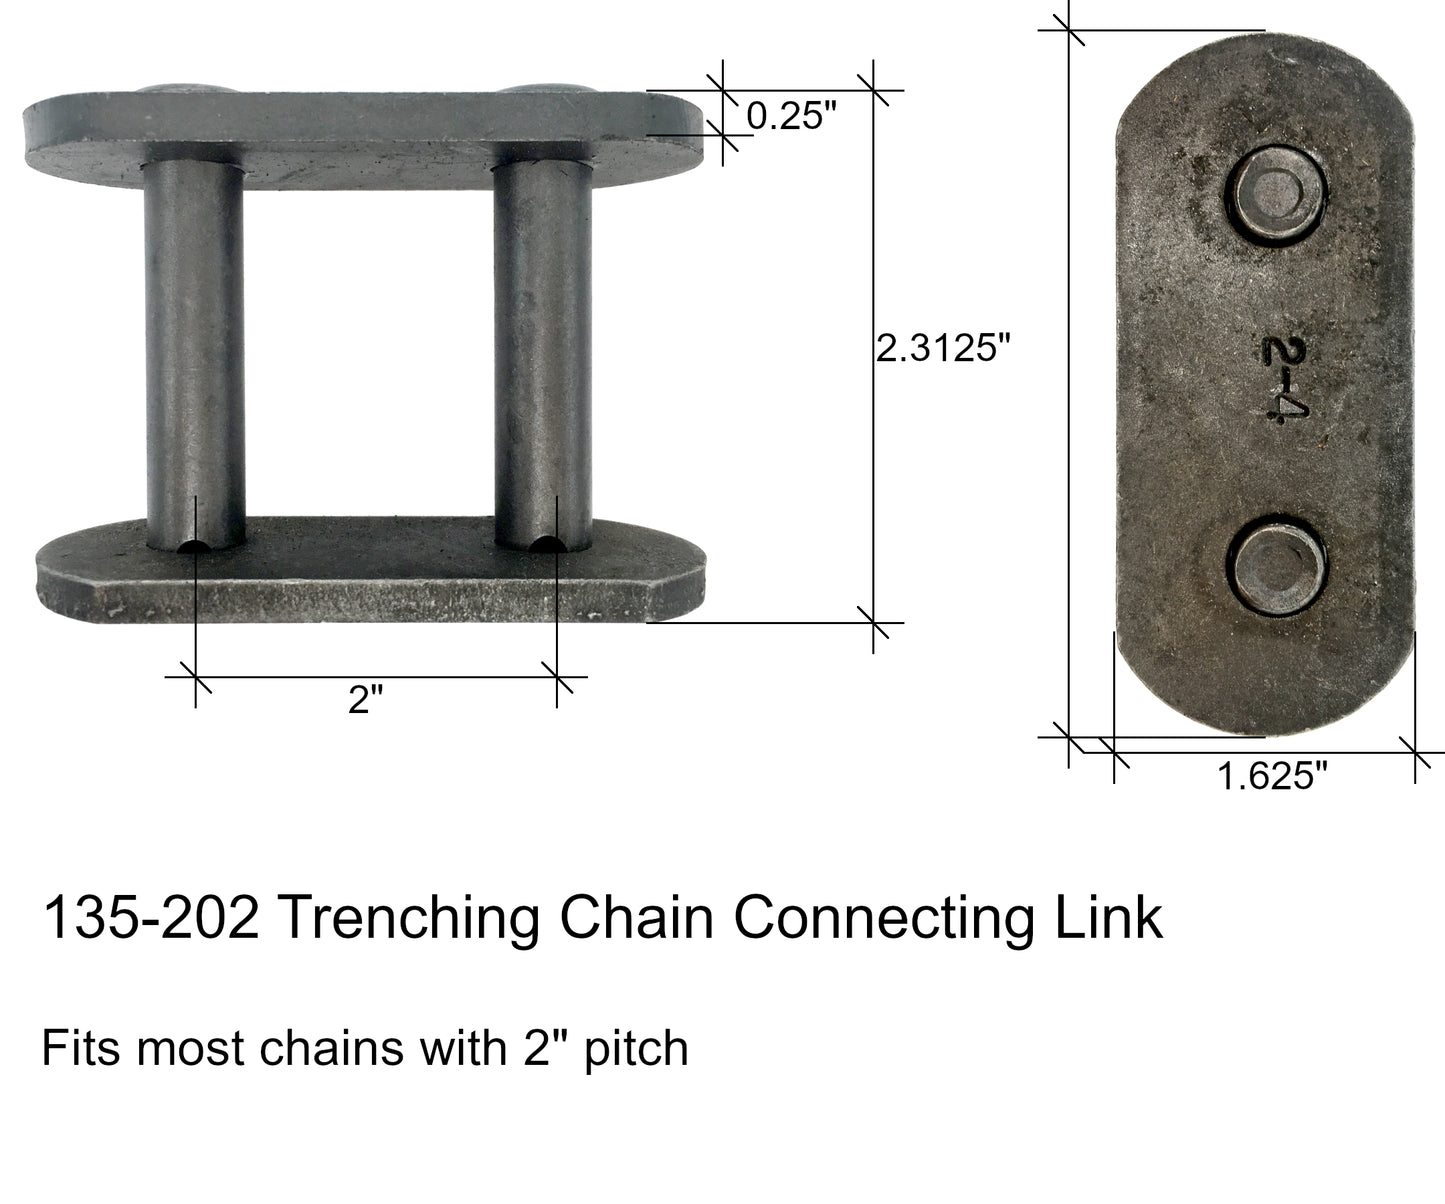 Eslabón de conexión de cadena para zanjas, se adapta a la mayoría de cadenas de paso de 2" - 135-202, 200CL